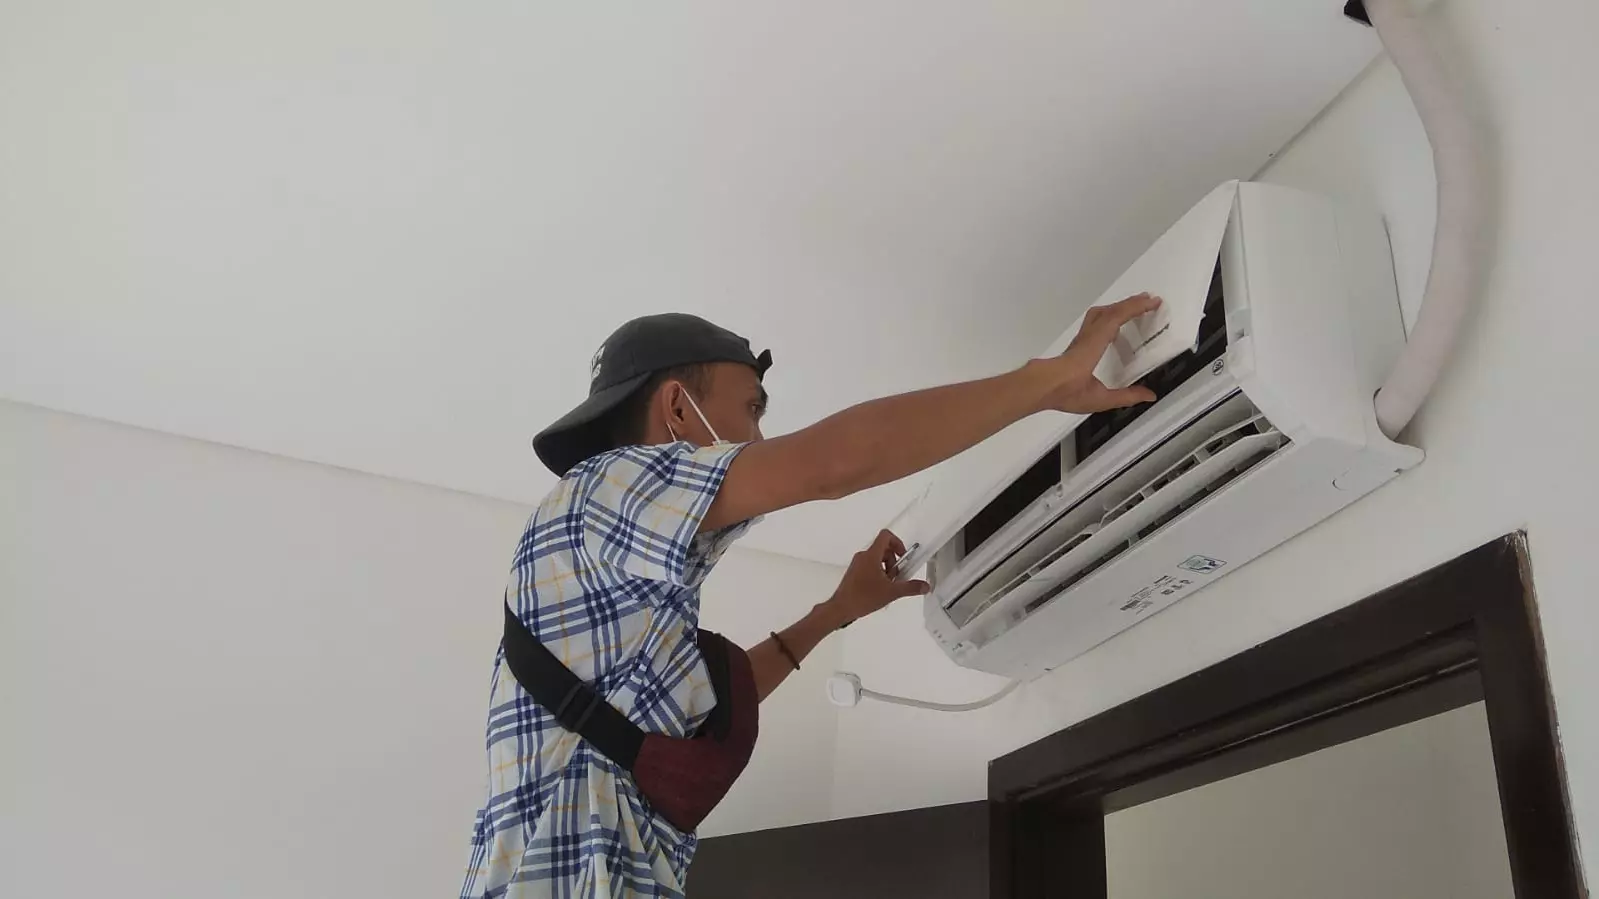 
	
	
	
		
		Layanan perawatan AC Inverter
		
		 Pondok Karya Terdekat Hubungi 6282312979522
		
	
	
	- Terbaik dengan Teknisi Kompeten
	
